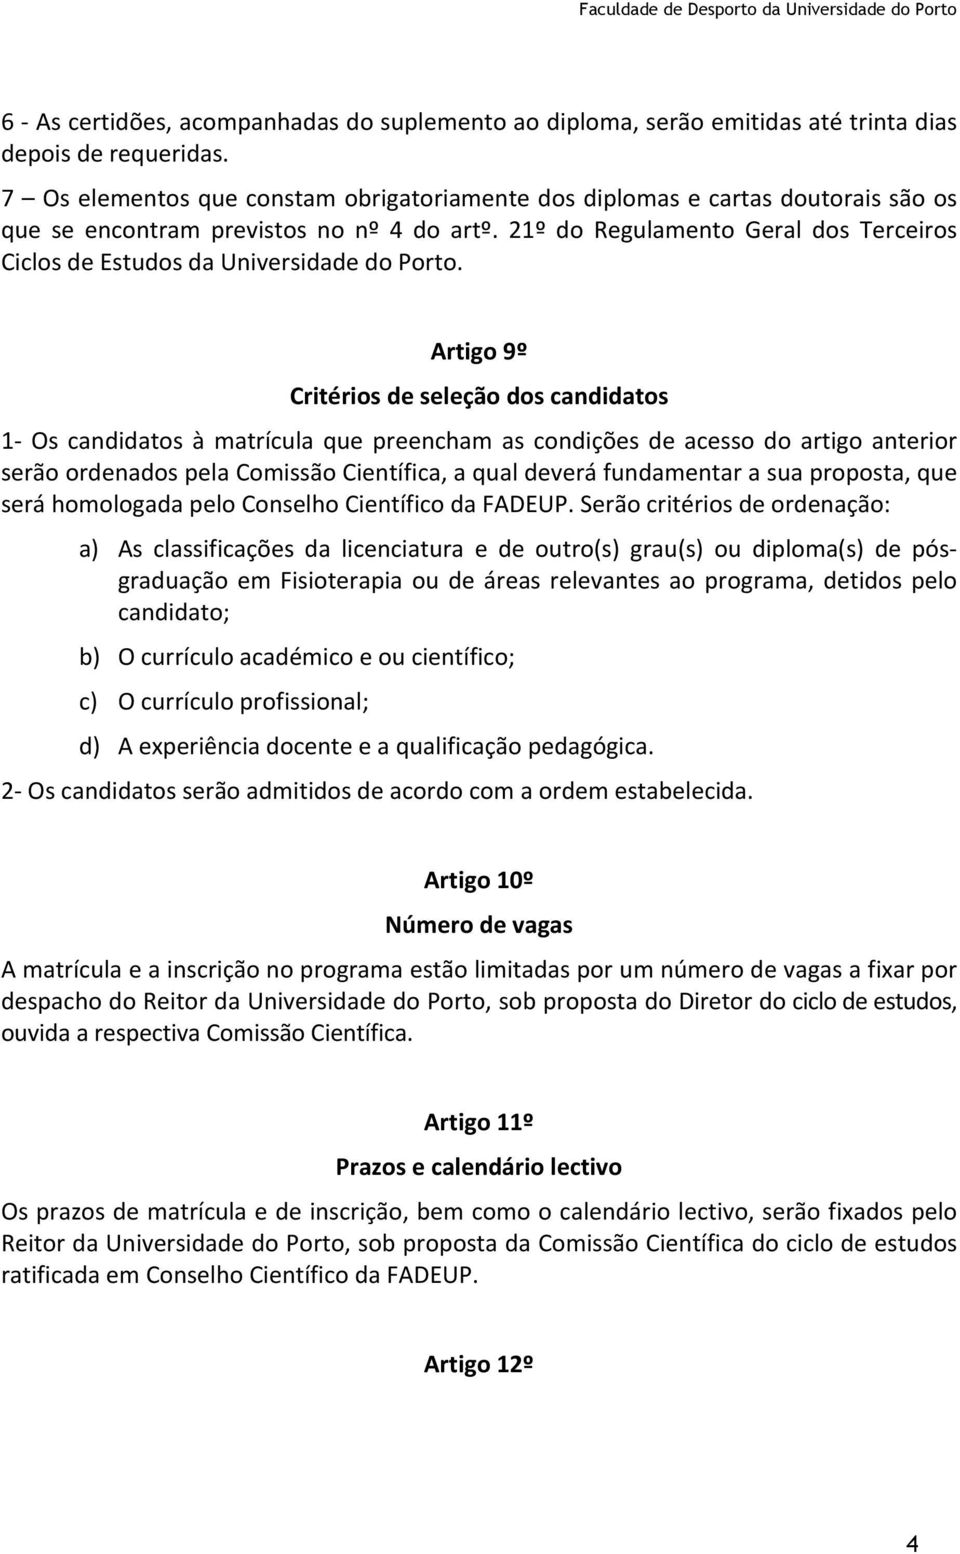 21º do Regulamento Geral dos Terceiros Ciclos de Estudos da Universidade do Porto.